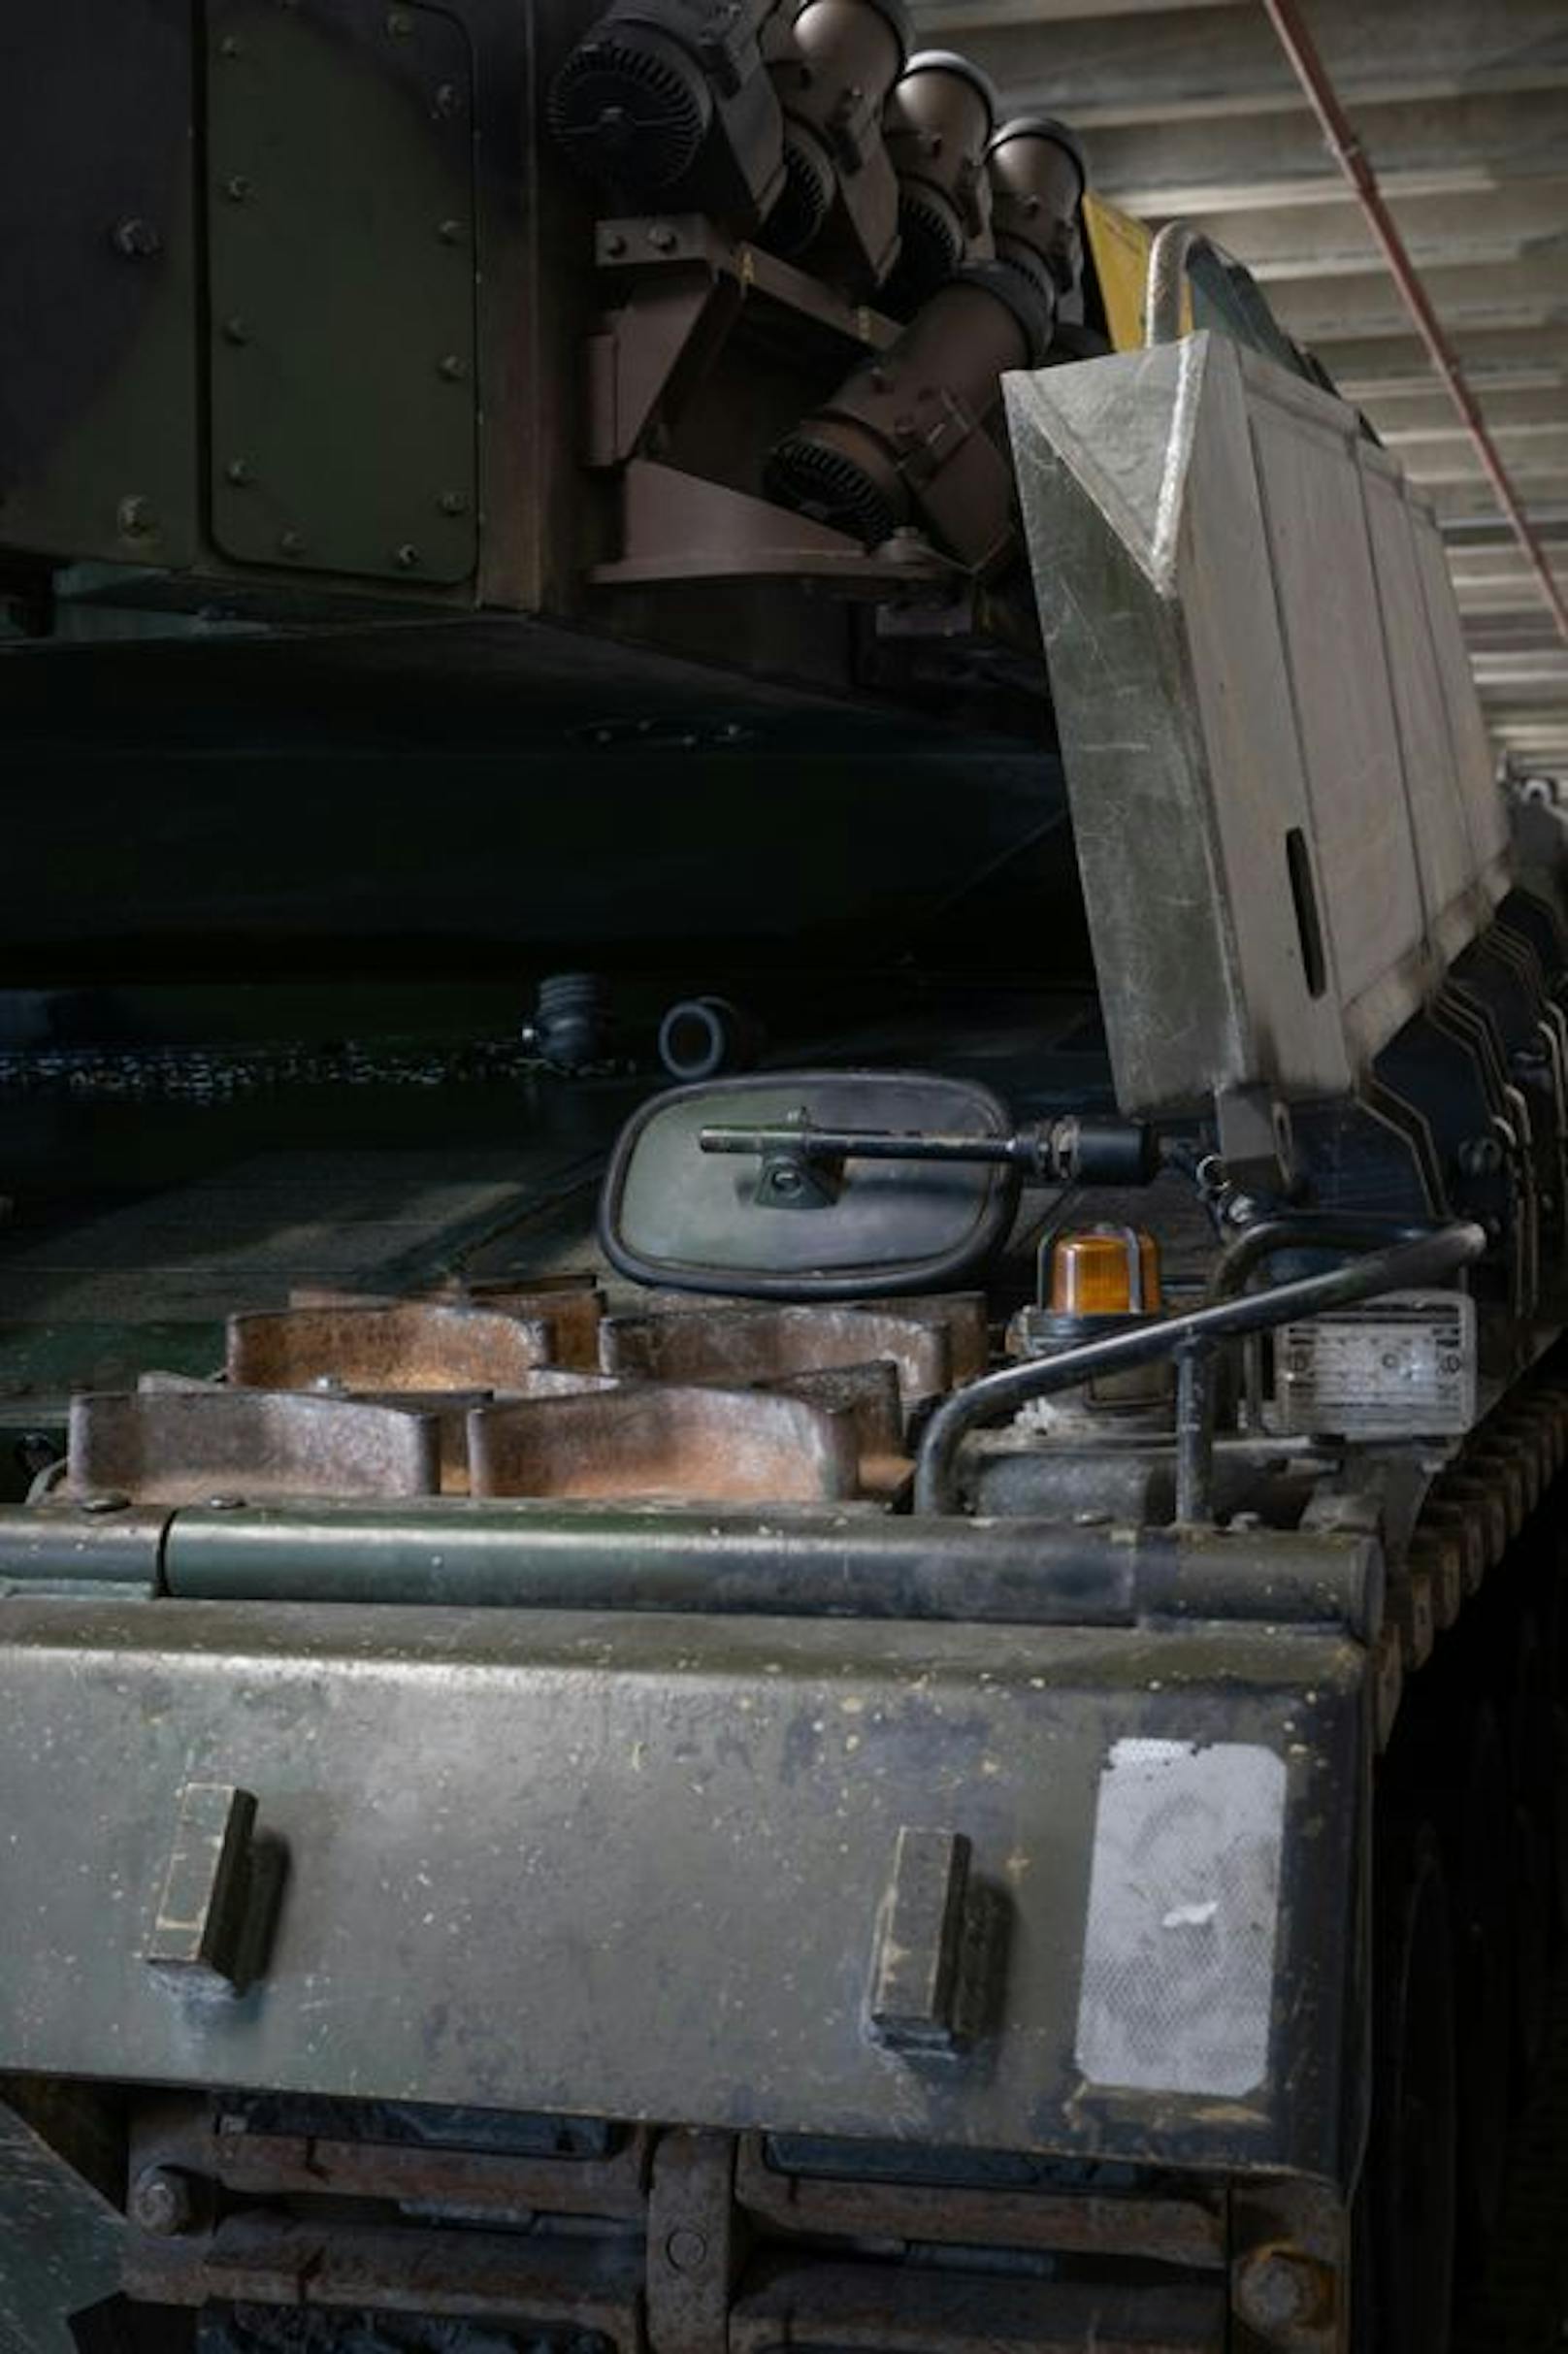 Stillgelegte "Panzer 87" vom Typ Leopard 2A4 WE der Schweizer Armee in Detailaufnahmen.